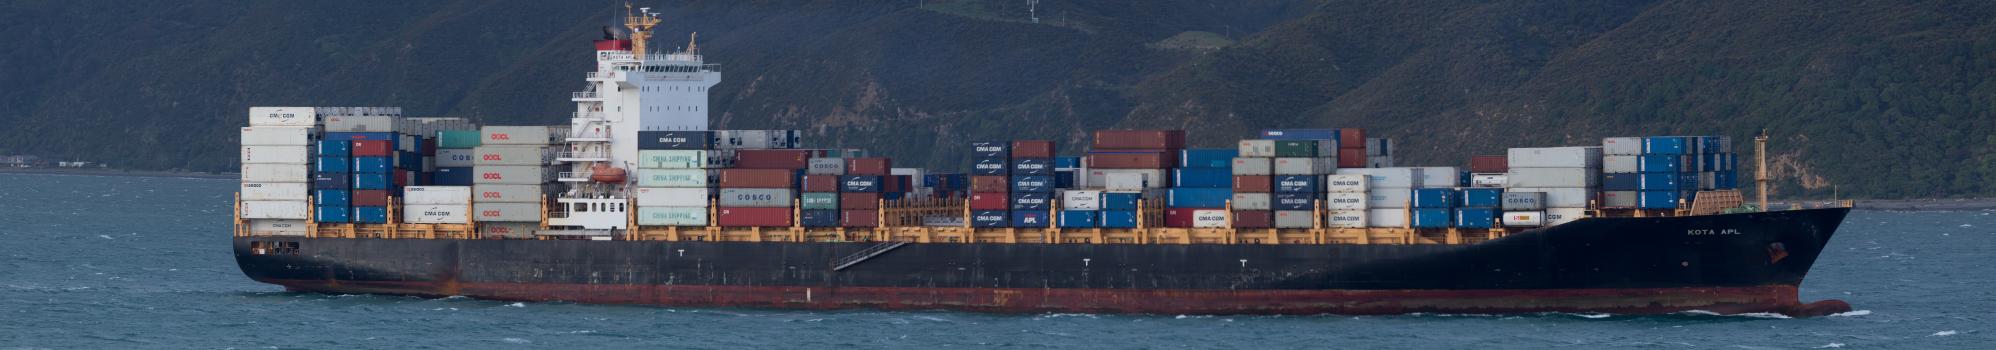 Long shipping container cargo ship panorama